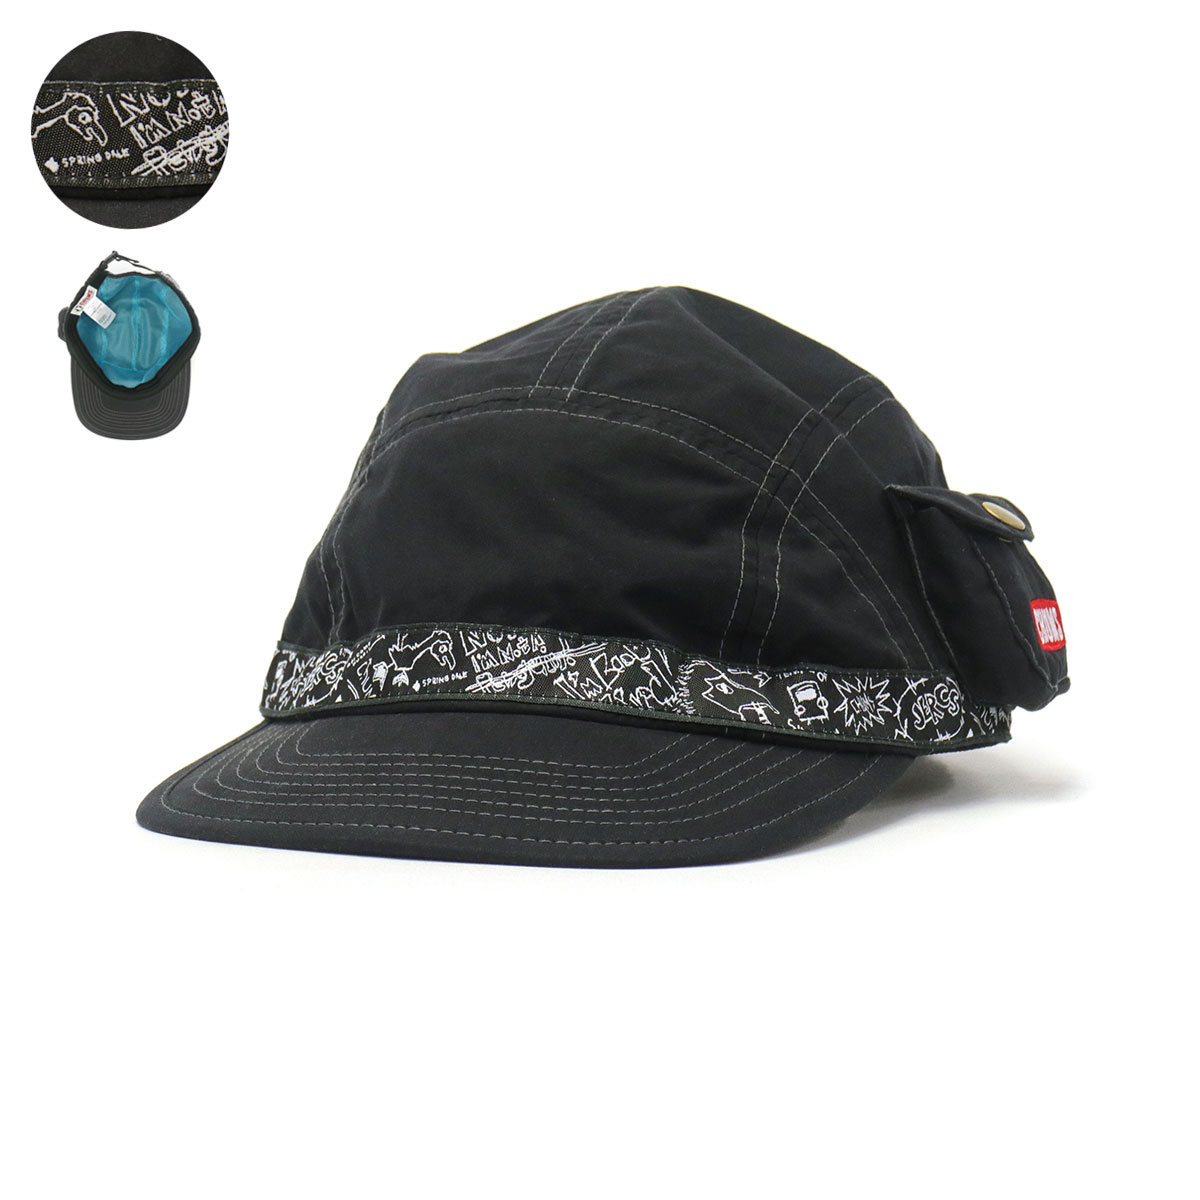 日本正規品 チャムス キャップ CHUMS フェスキャップ Fes Cap 帽子 ロゴ 刺繍 ポケット付き メンズ レディース ユニセックス  CH05-1284